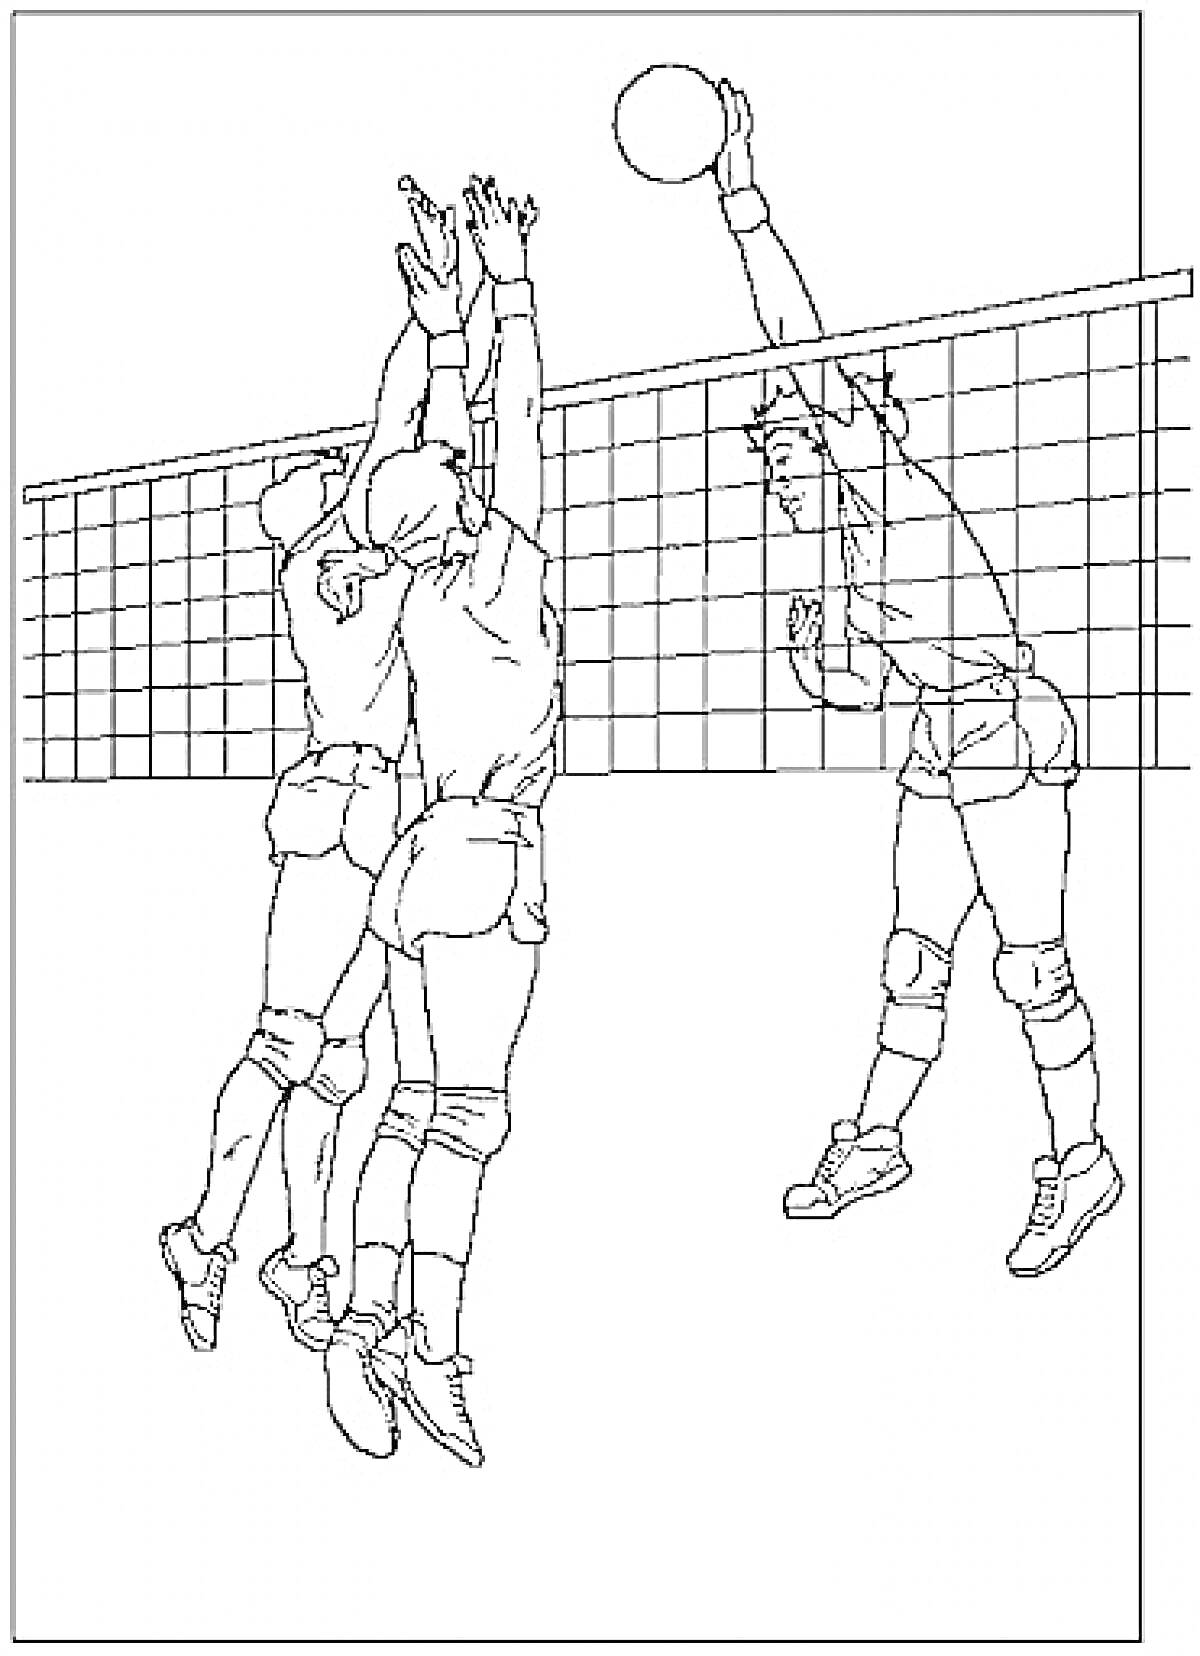 Волейболисты, играющие возле сетки, один игрок с левой стороны поднимает руки вверх в прыжке, чтобы заблокировать мяч, в то время как другой игрок справа пытается пробить мяч через сетку.